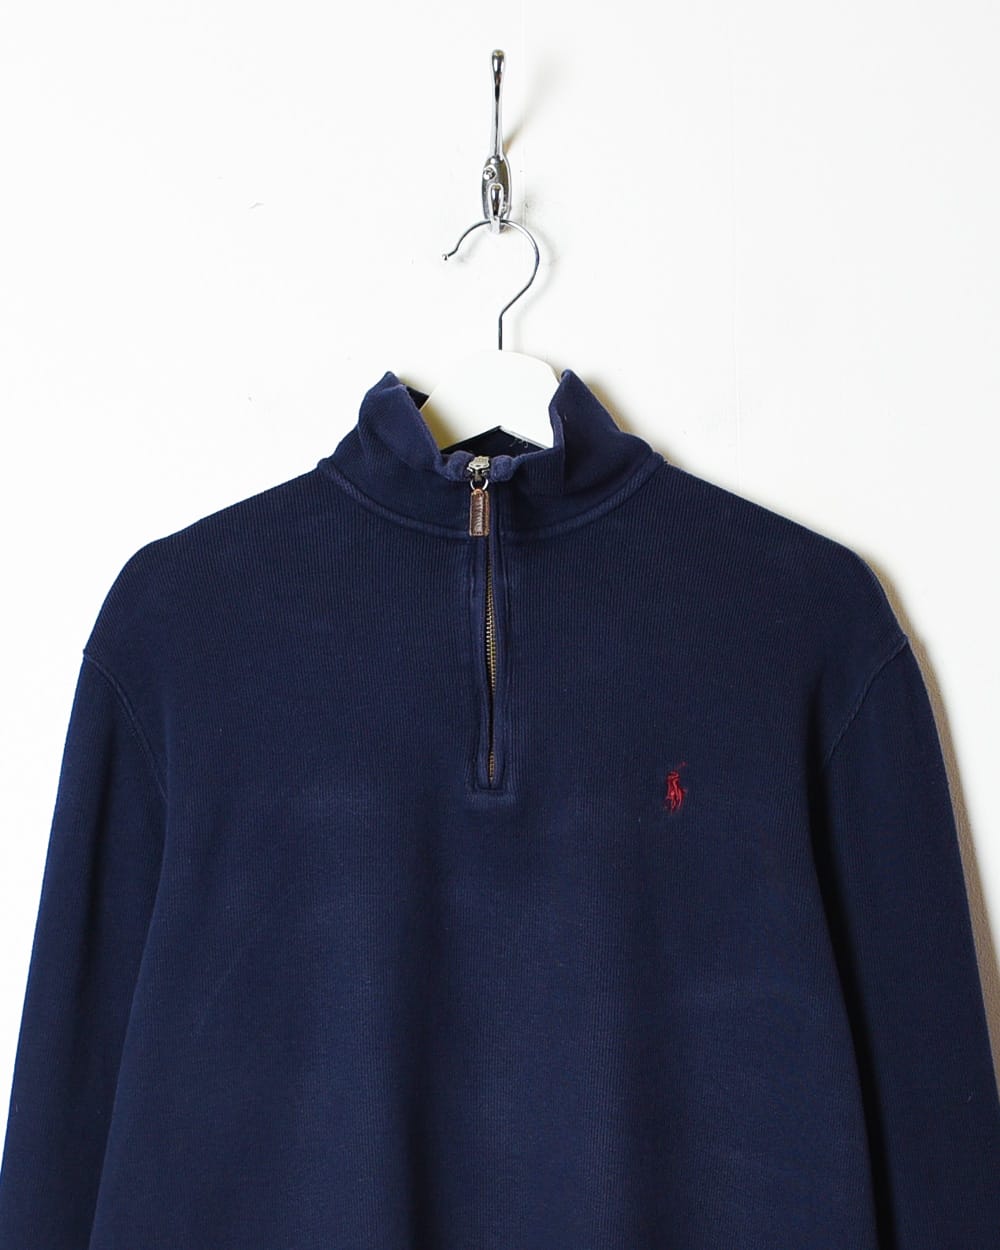 Navy Polo Ralph Lauren 1/4 Zip Sweatshirt - Small